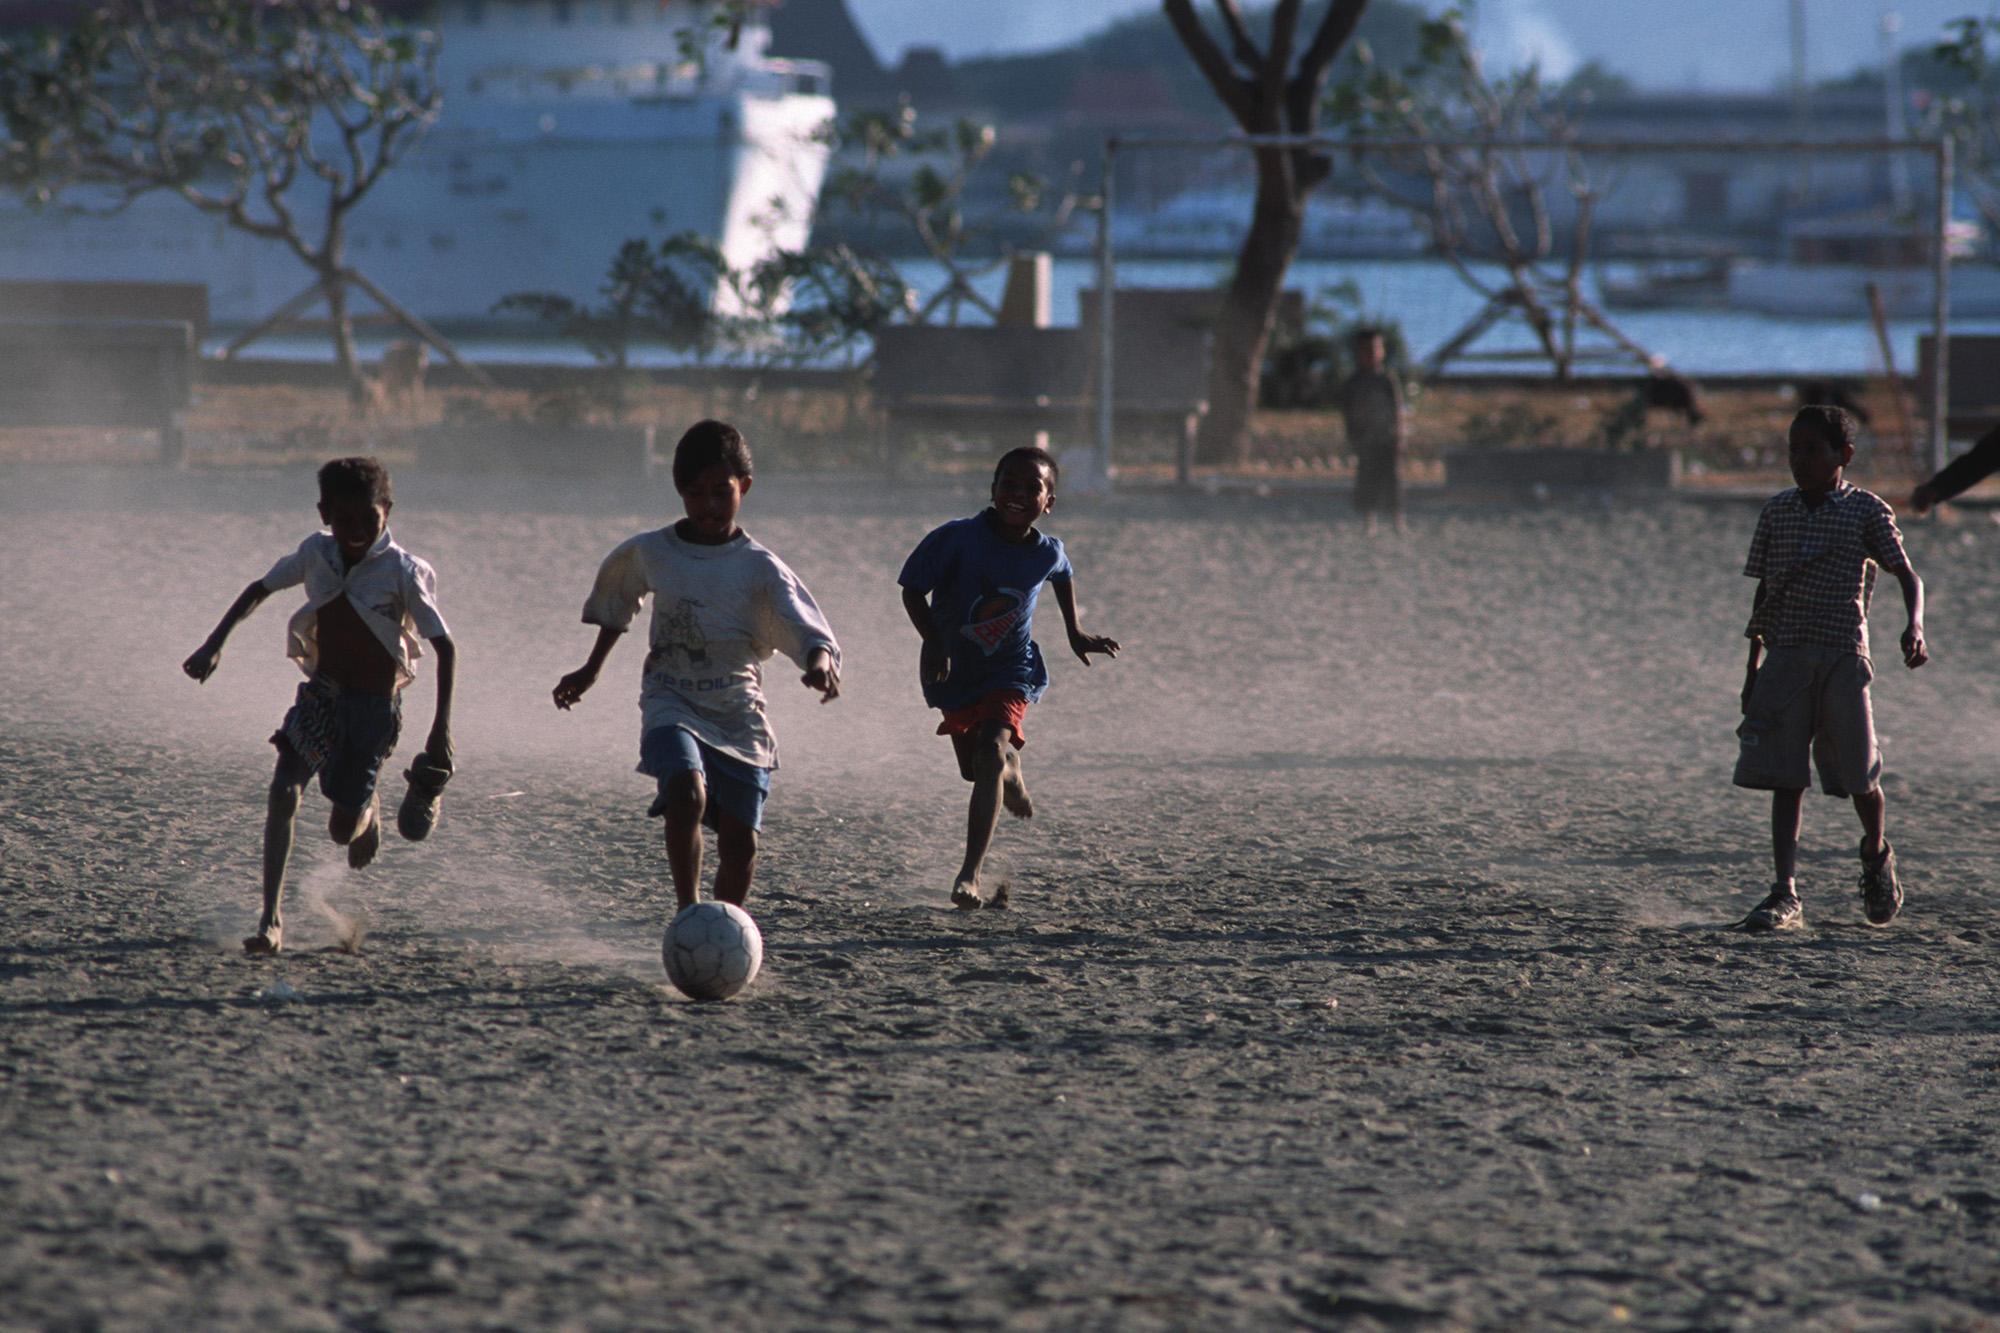 Children playing football (soccer) in Timor-Leste.